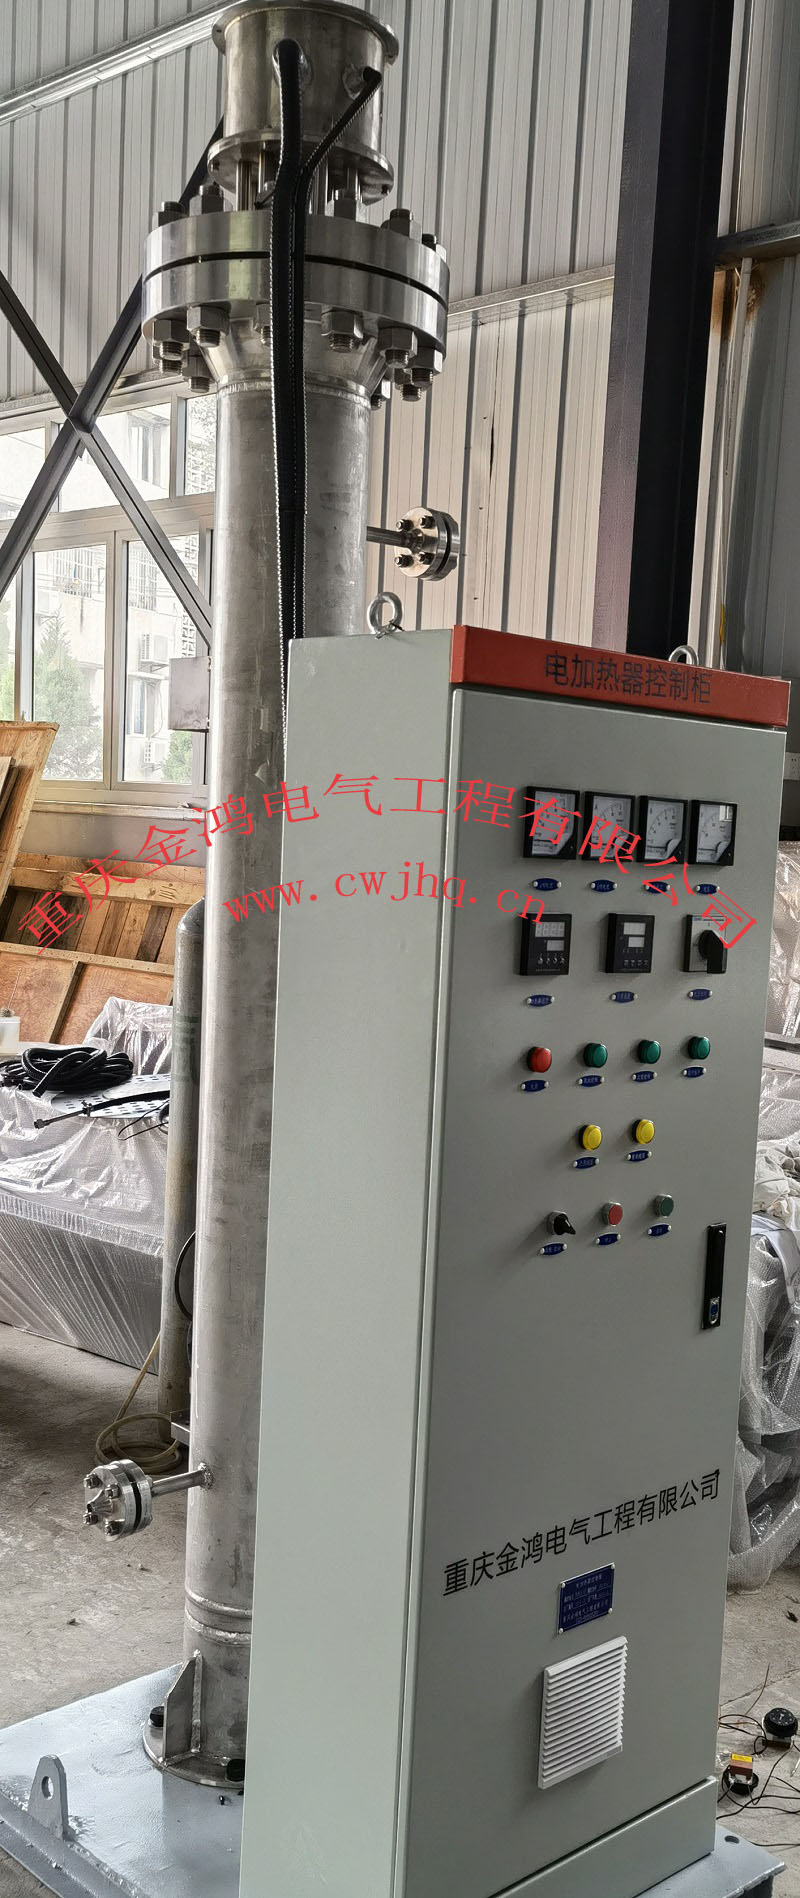 一体化电加热器-撬装防爆电加热器-重庆金鸿电气工程有限公司